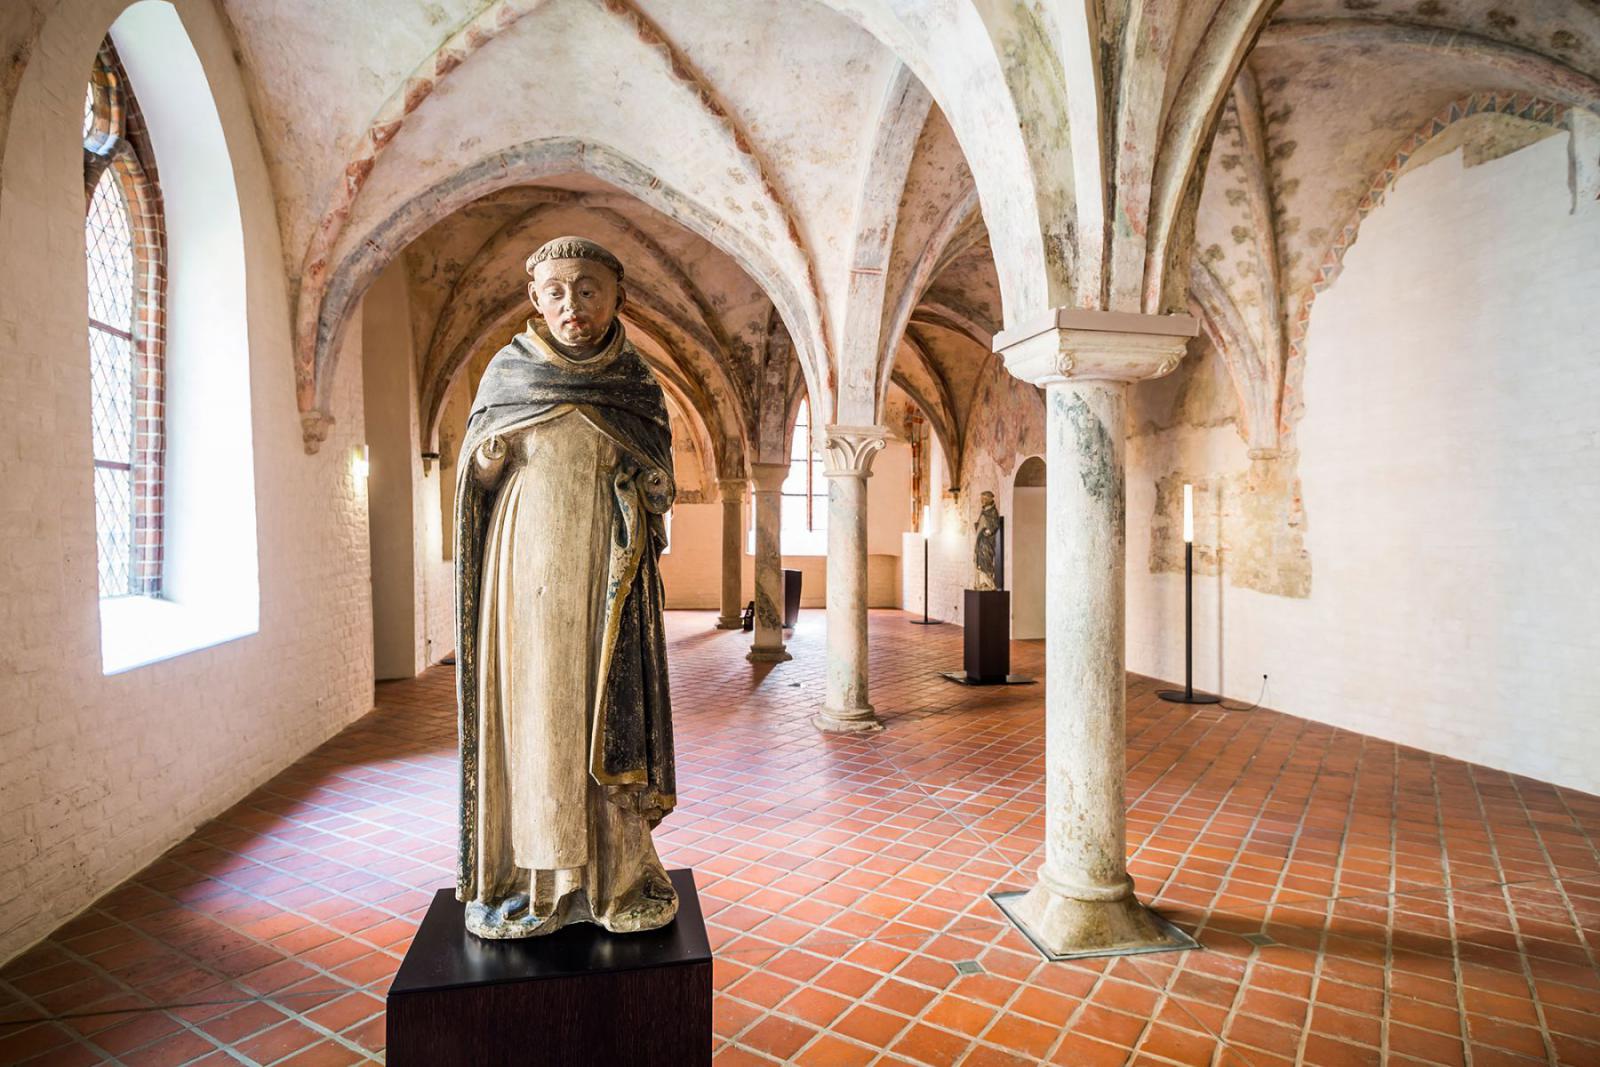 Het Europäische Hanzemuseum is een museum in Lübeck. Het klooster is onderdeel van dit museum over geschiedenis.